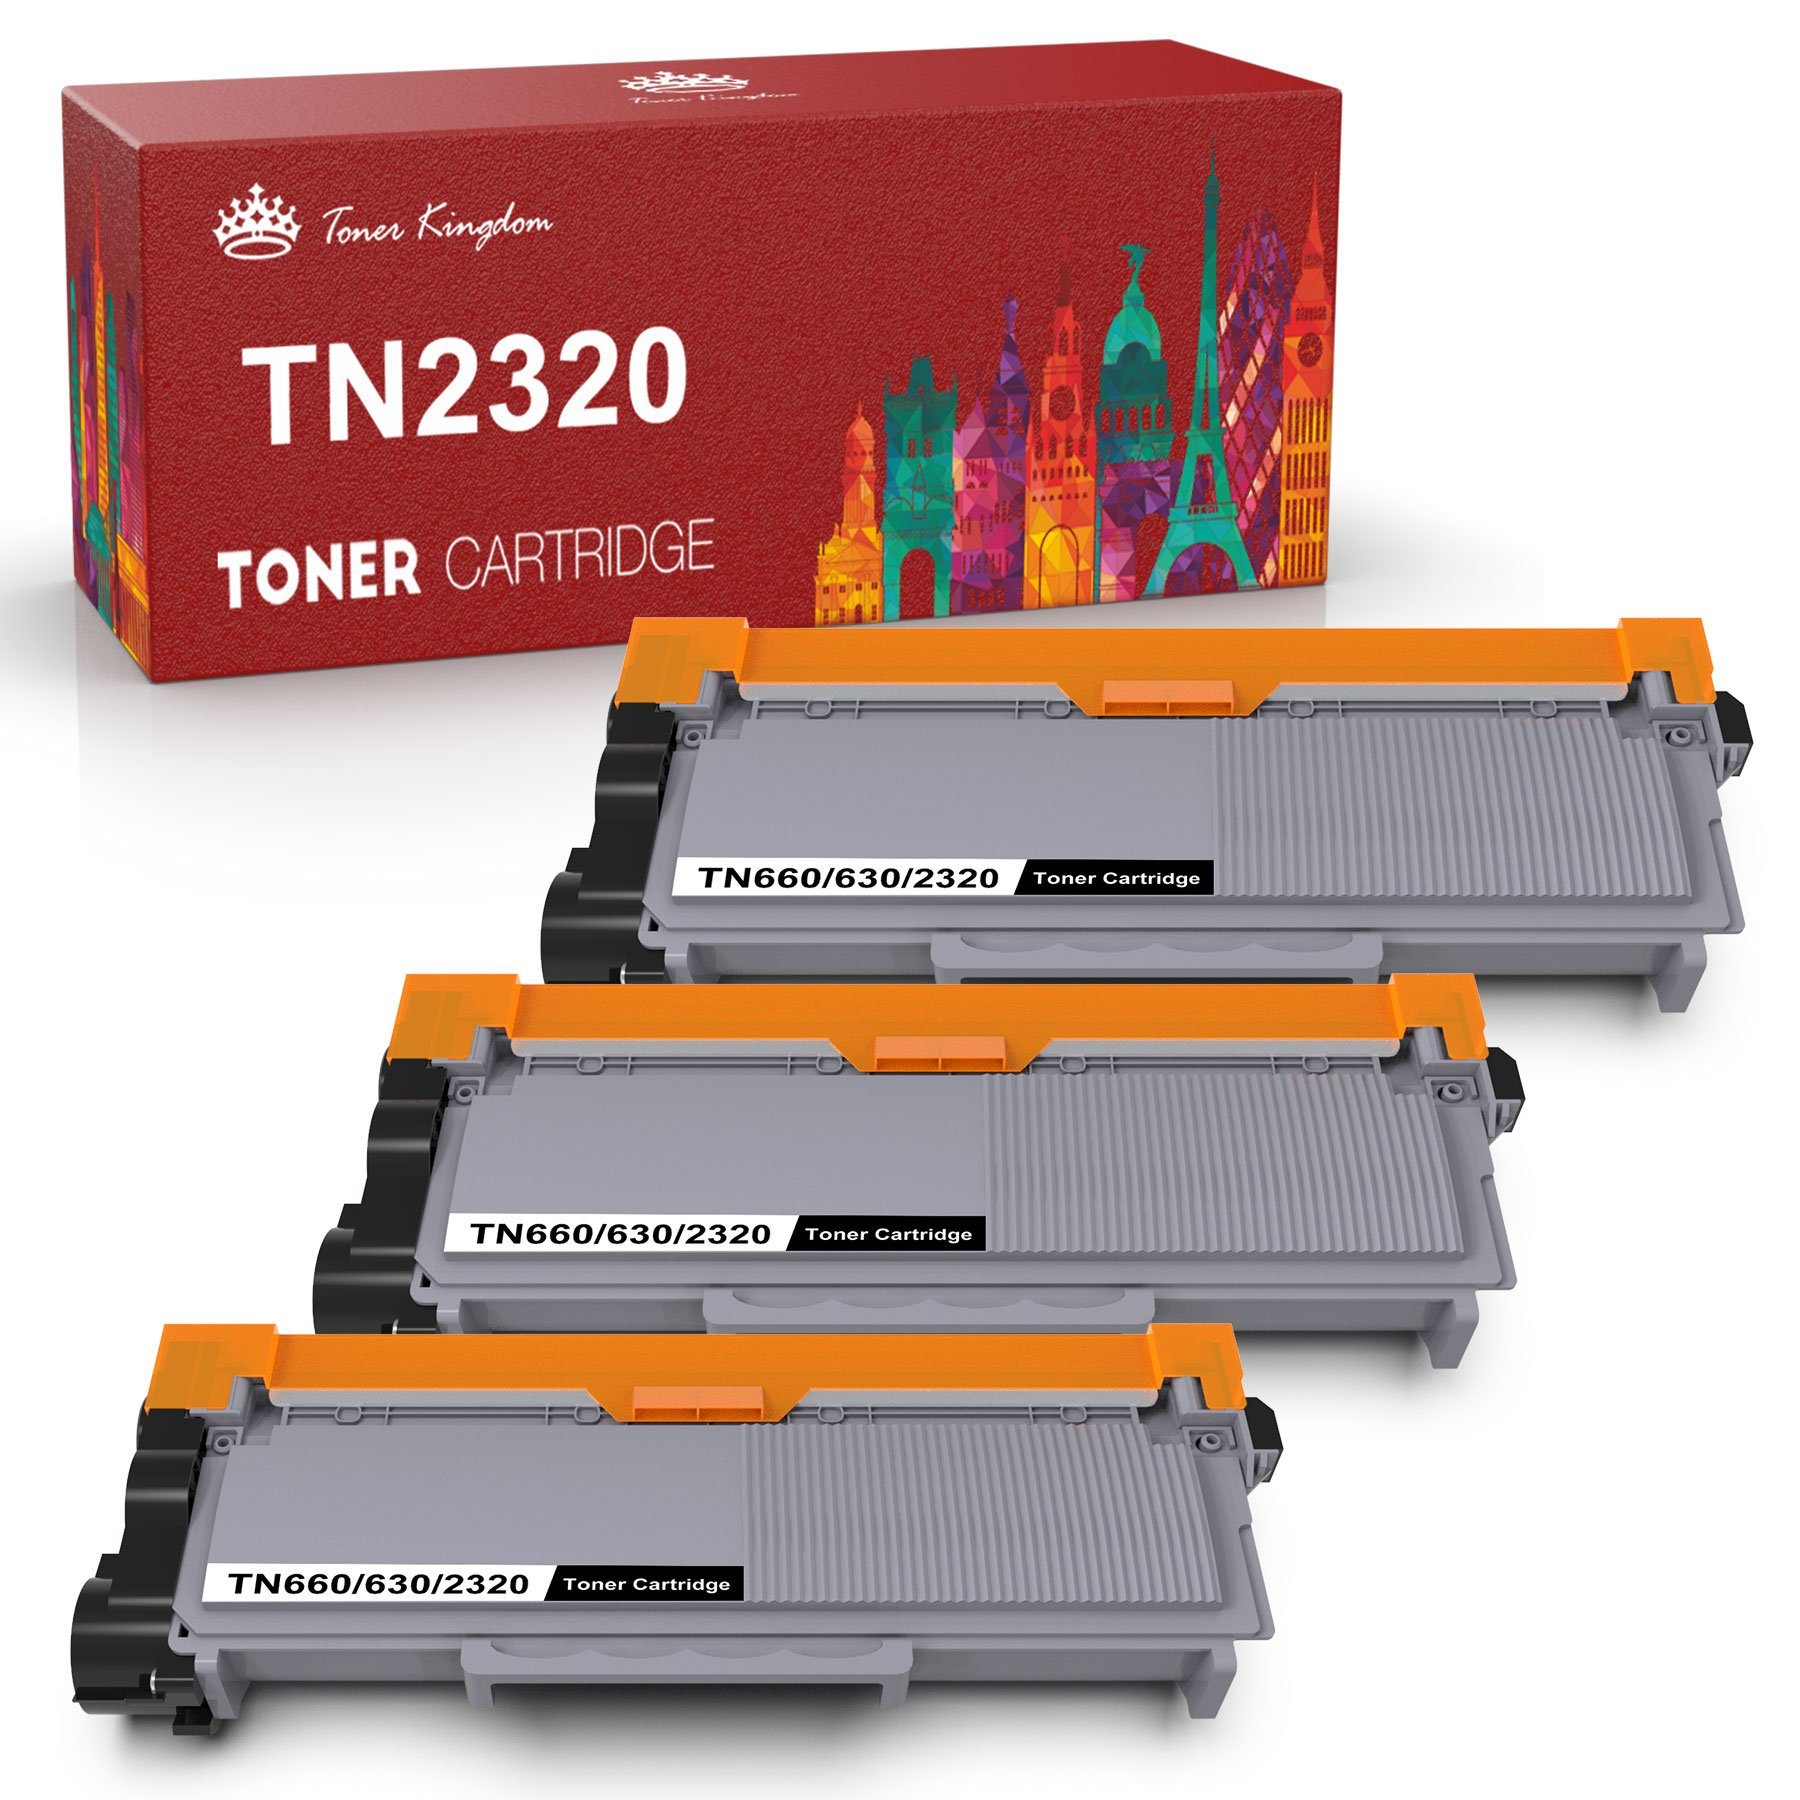 Toner Kingdom Tonerpatrone 3PK TN2320 für Brother MFC-L2700DW HL-L2340DW  DCP-L2520DW